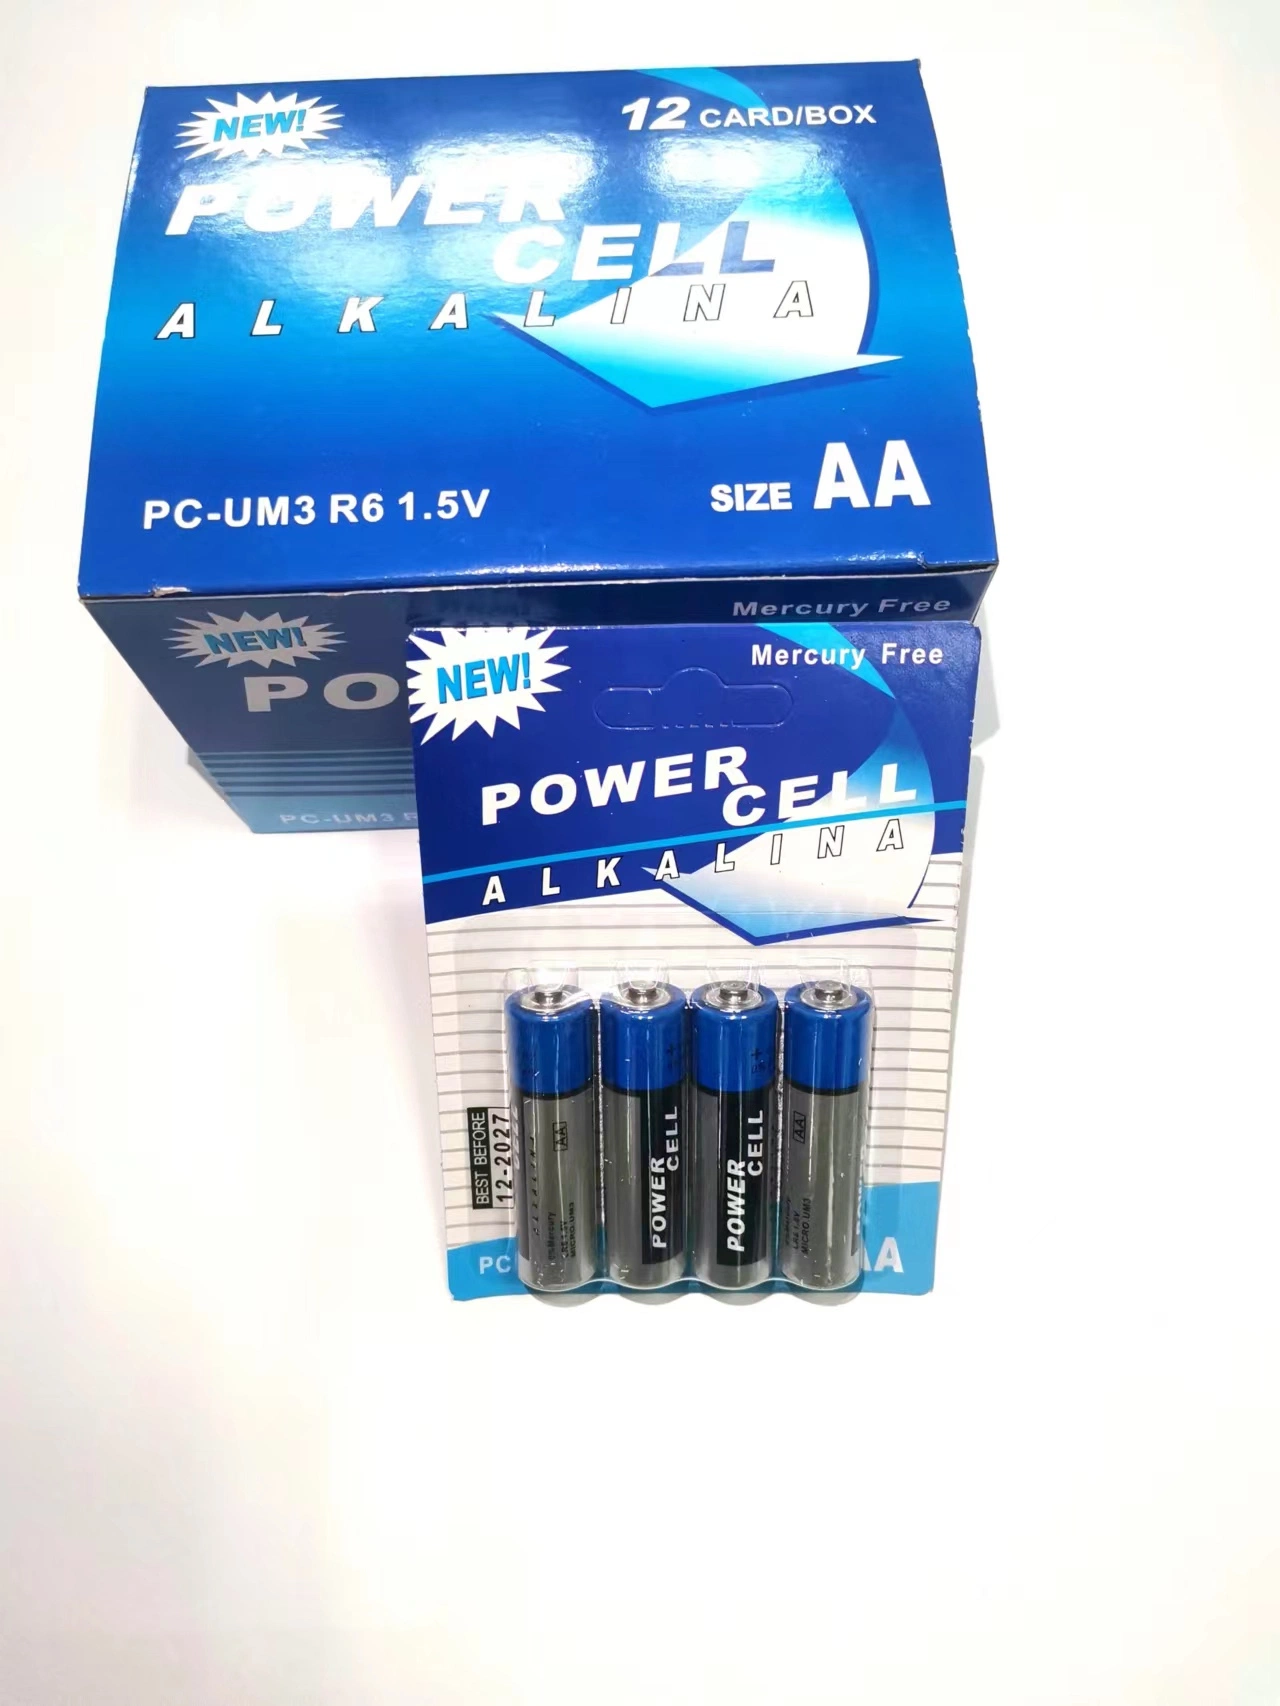 Puissant prix économique PowerCELL AAA R03 UM-4 1.5V carbone zinc Batterie batterie batterie sèche batterie batterie principale batterie carbone pour Électronique grand public/télécommande C